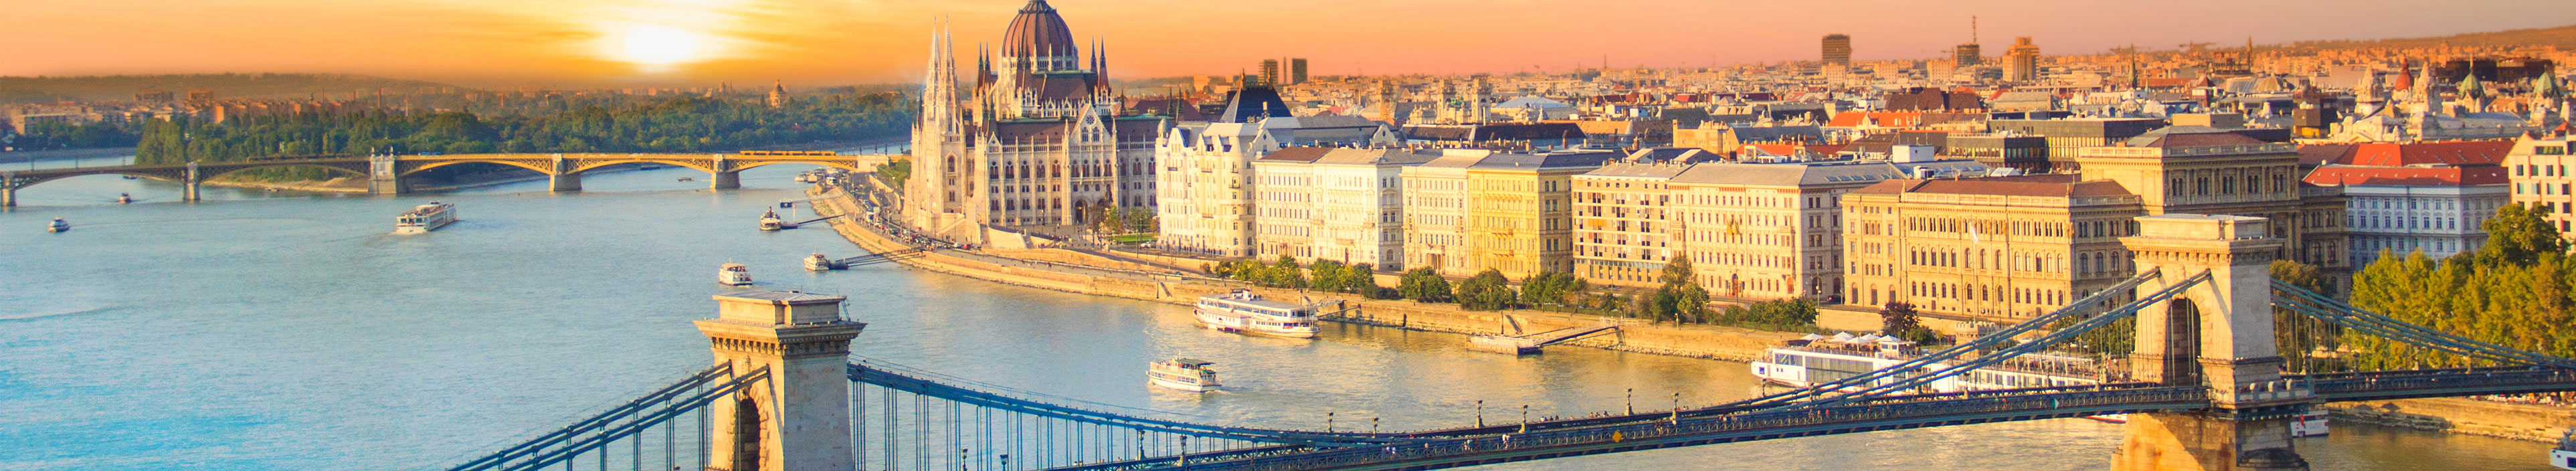 Schöne Aussicht auf das ungarische Parlament und die Kettenbrücke in Budapest, Ungarn